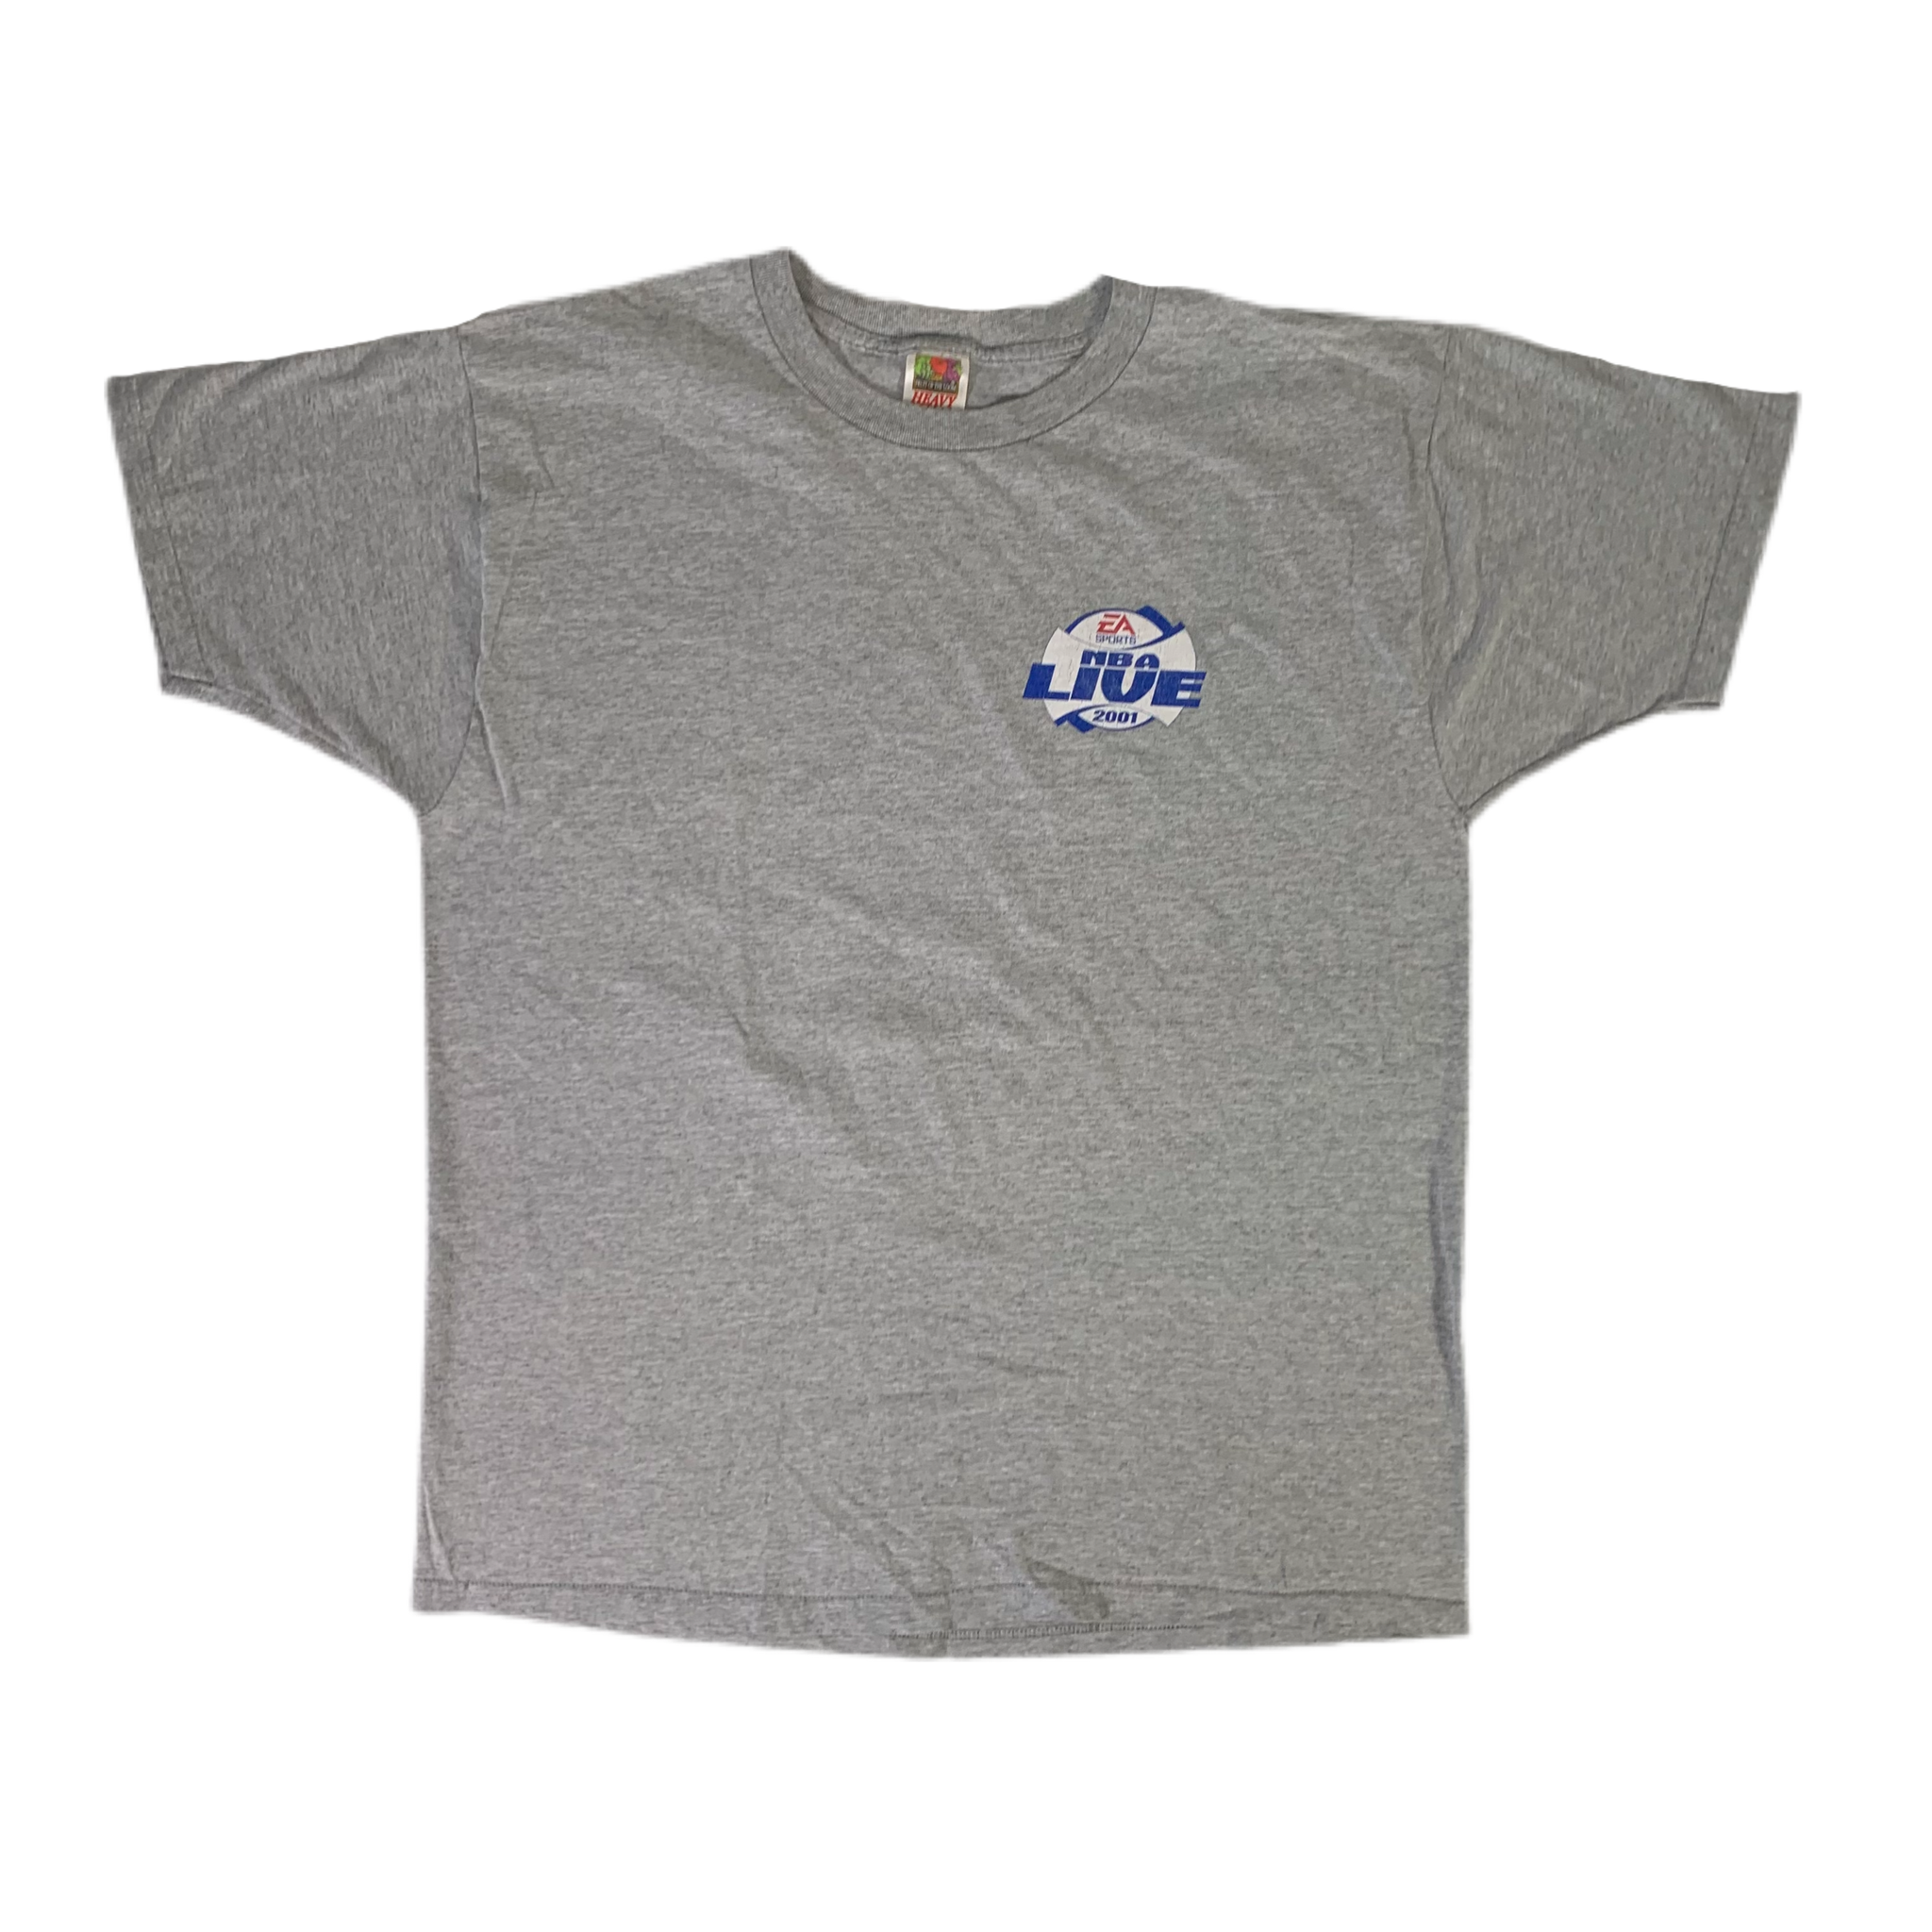 Vintage NBA Live 2001 Dunkus Collosus PS2 Promotional T-Shirt